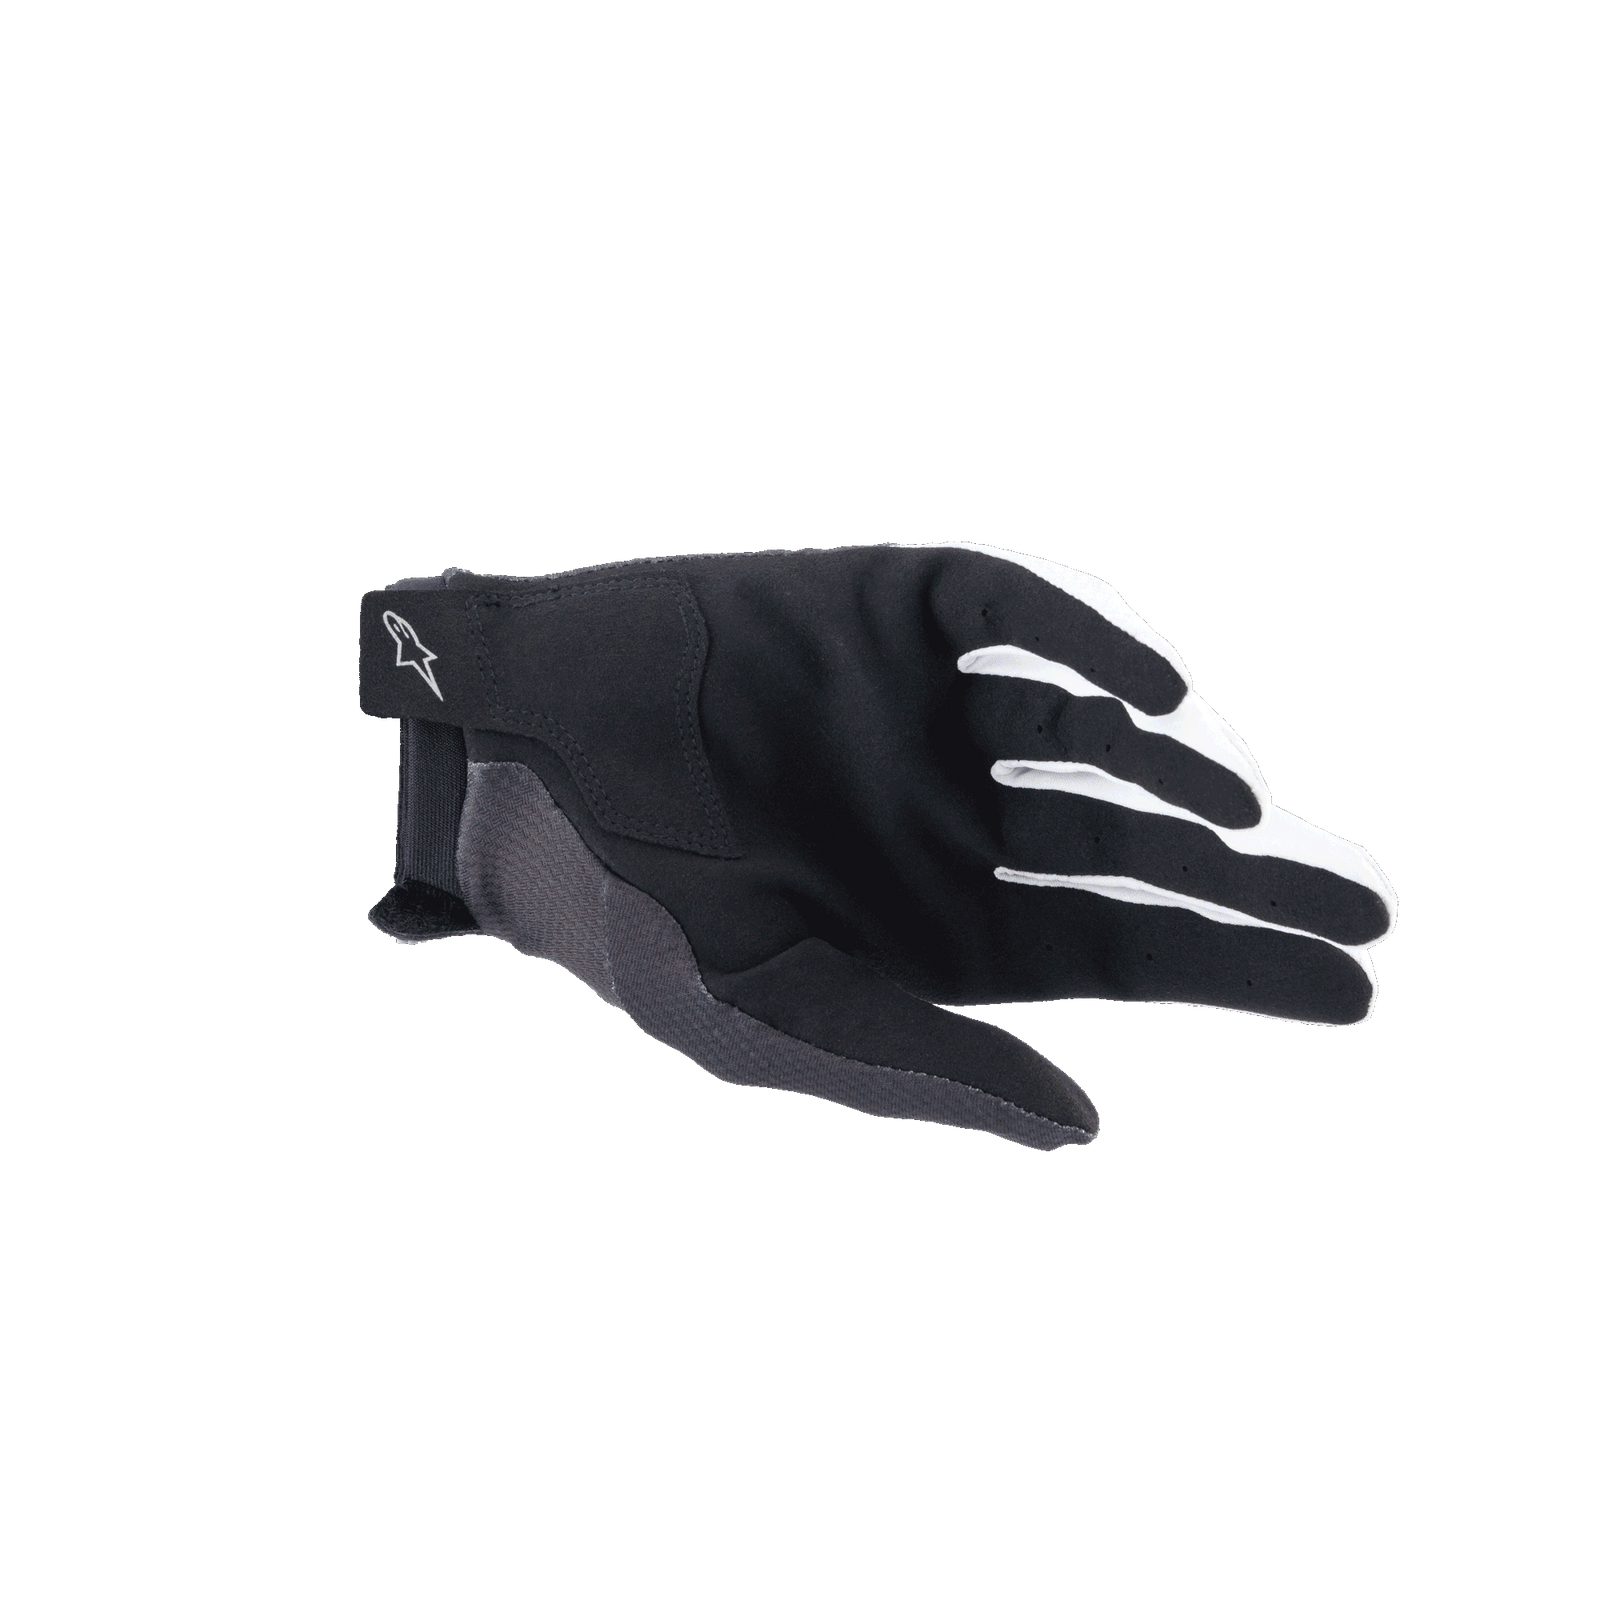 A-Aria Gloves